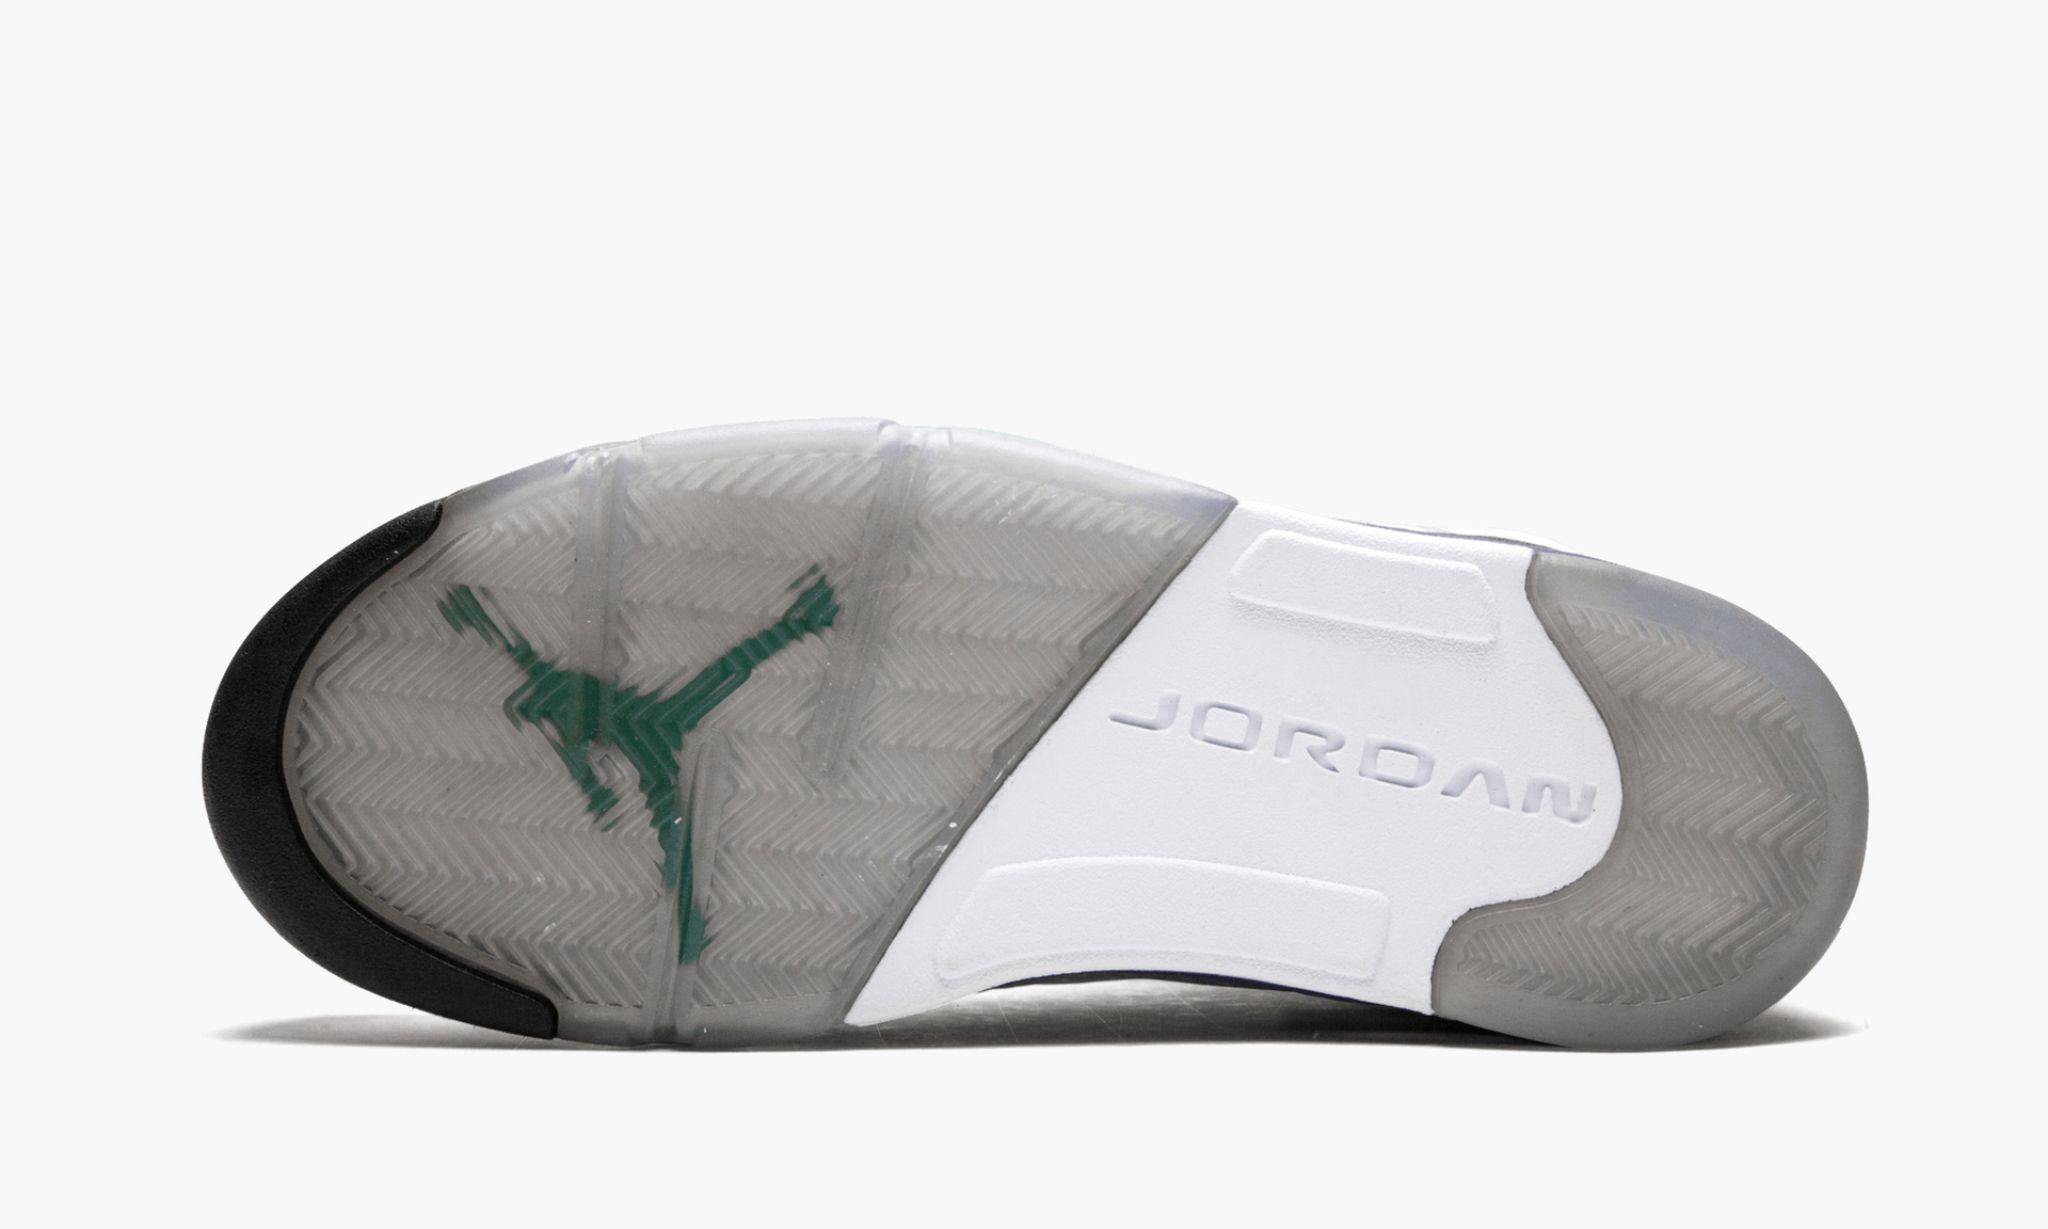 Jumpman, Jordan Brand, Jordan 5, Community Poll, Air Jordan 5 Grape, Air Jordan 5 Black Grape, Air Jordan 5, Air Jordan